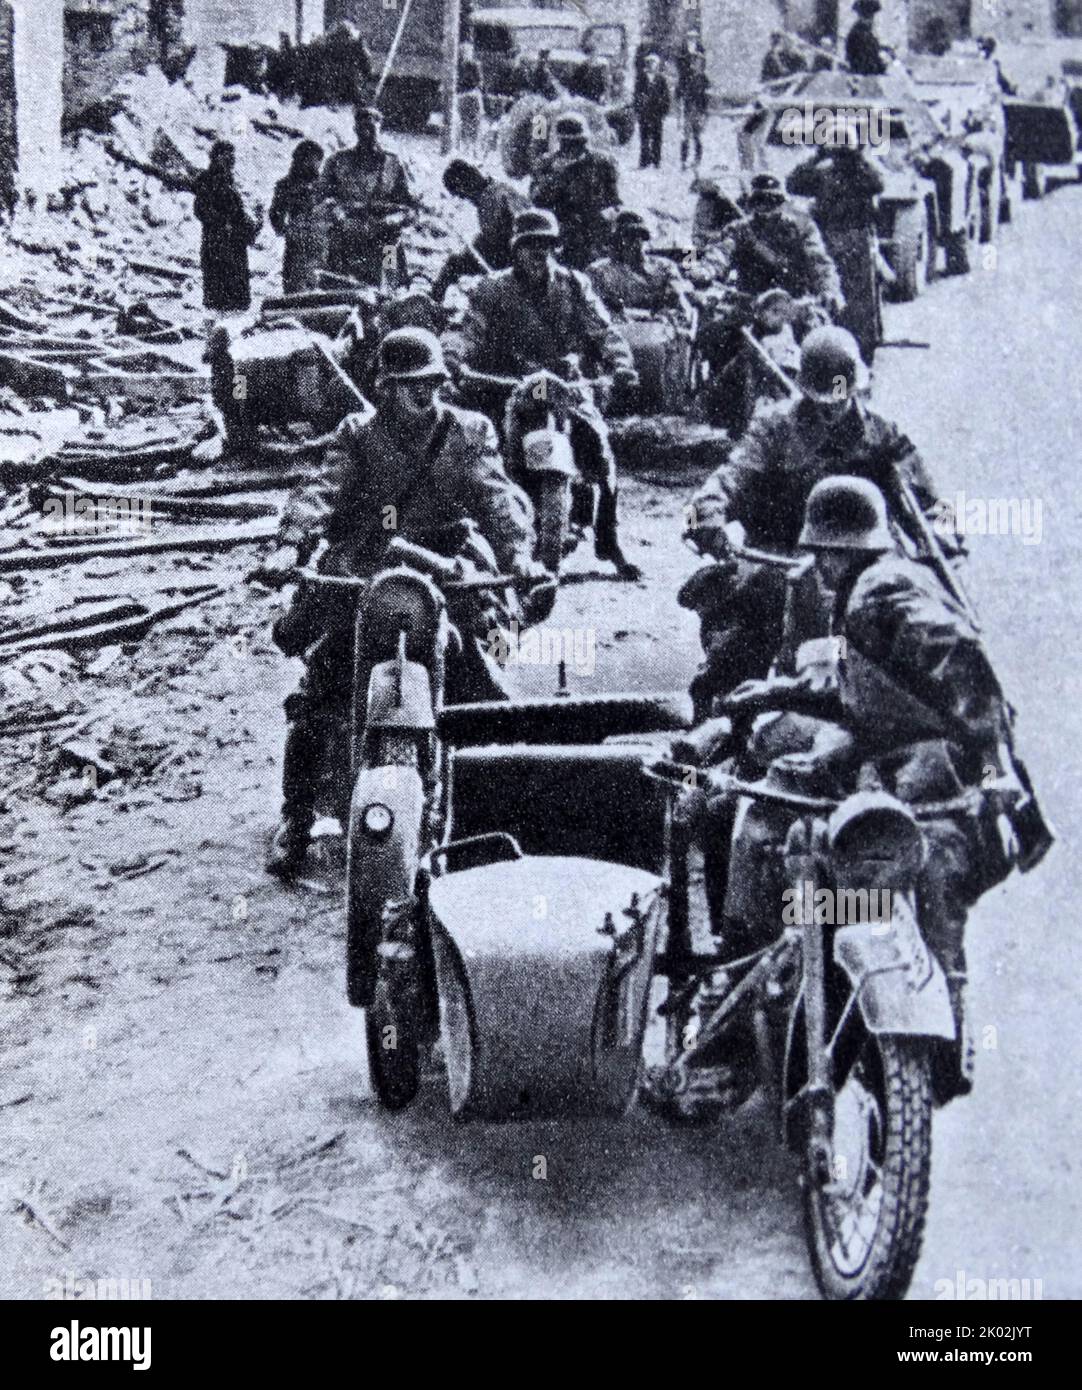 Le truppe naziste invadono la Polonia. 1939 Foto Stock